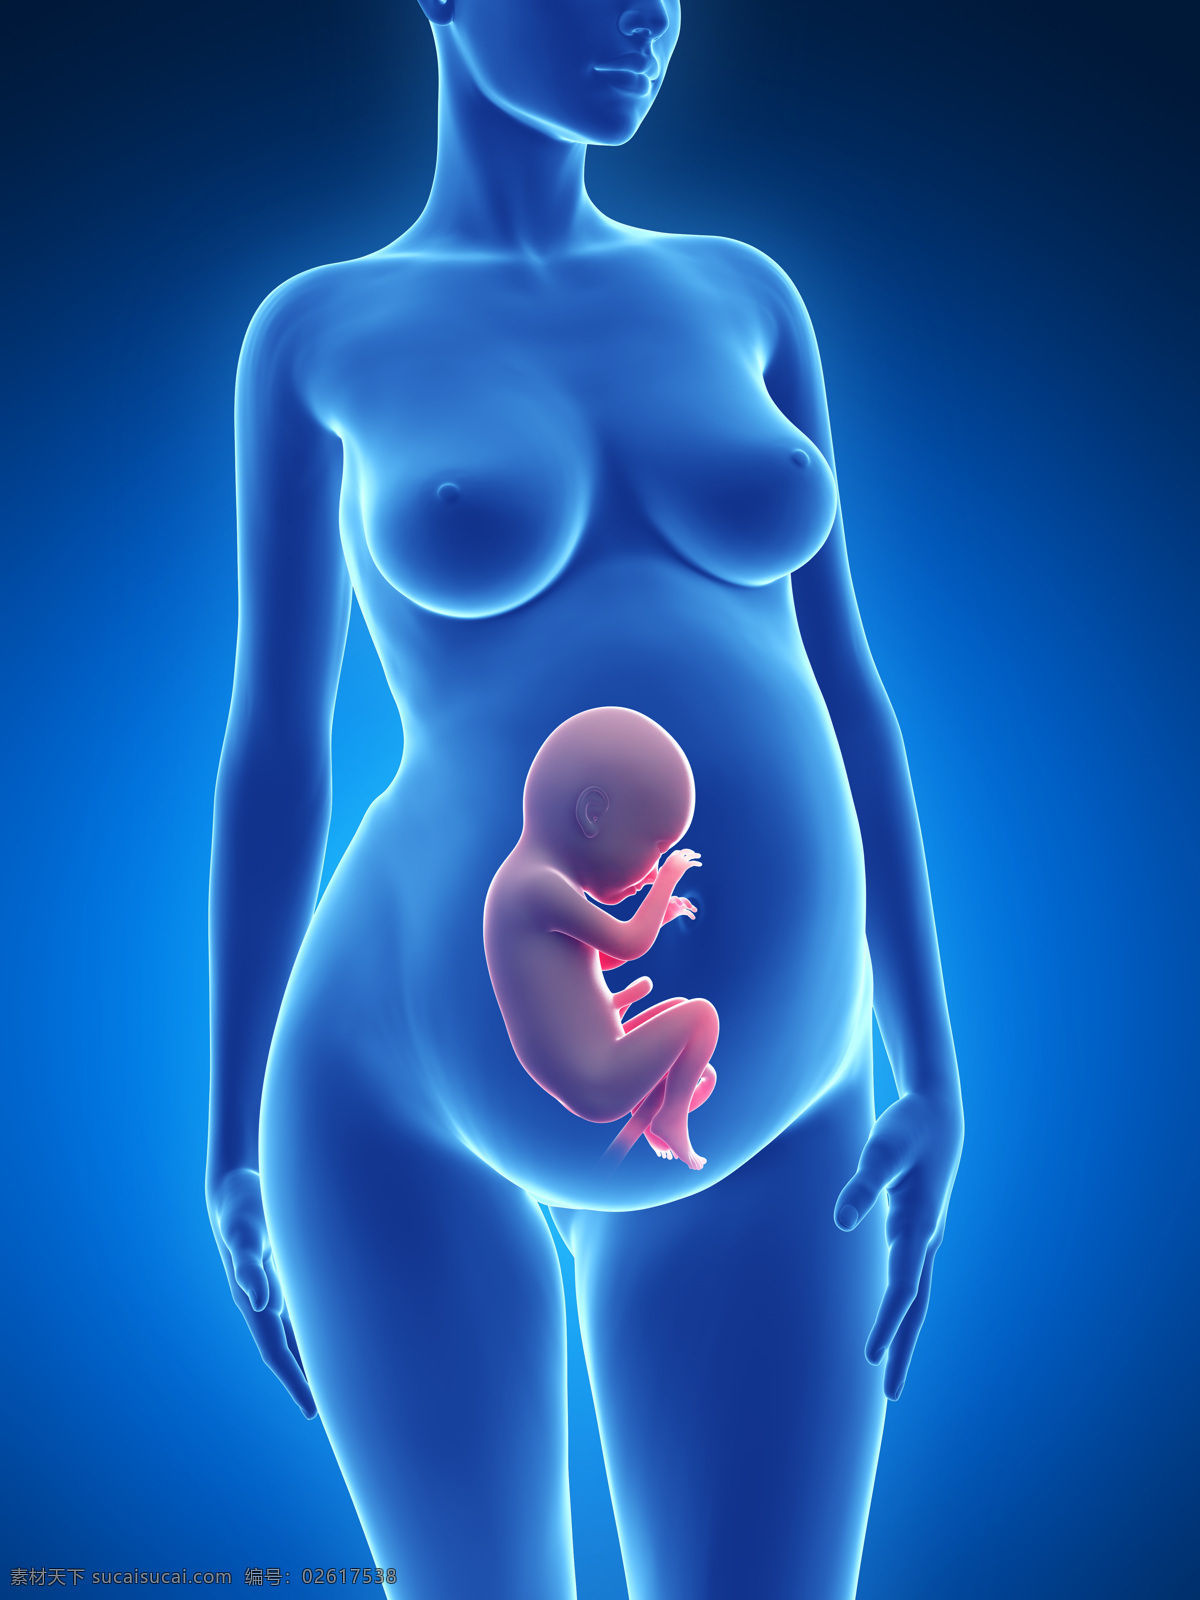 发育中的婴儿 唯美 炫酷 3d 胚胎 发育 婴儿 早期婴儿 初期婴儿 怀孕 子宫里的婴儿 3d设计